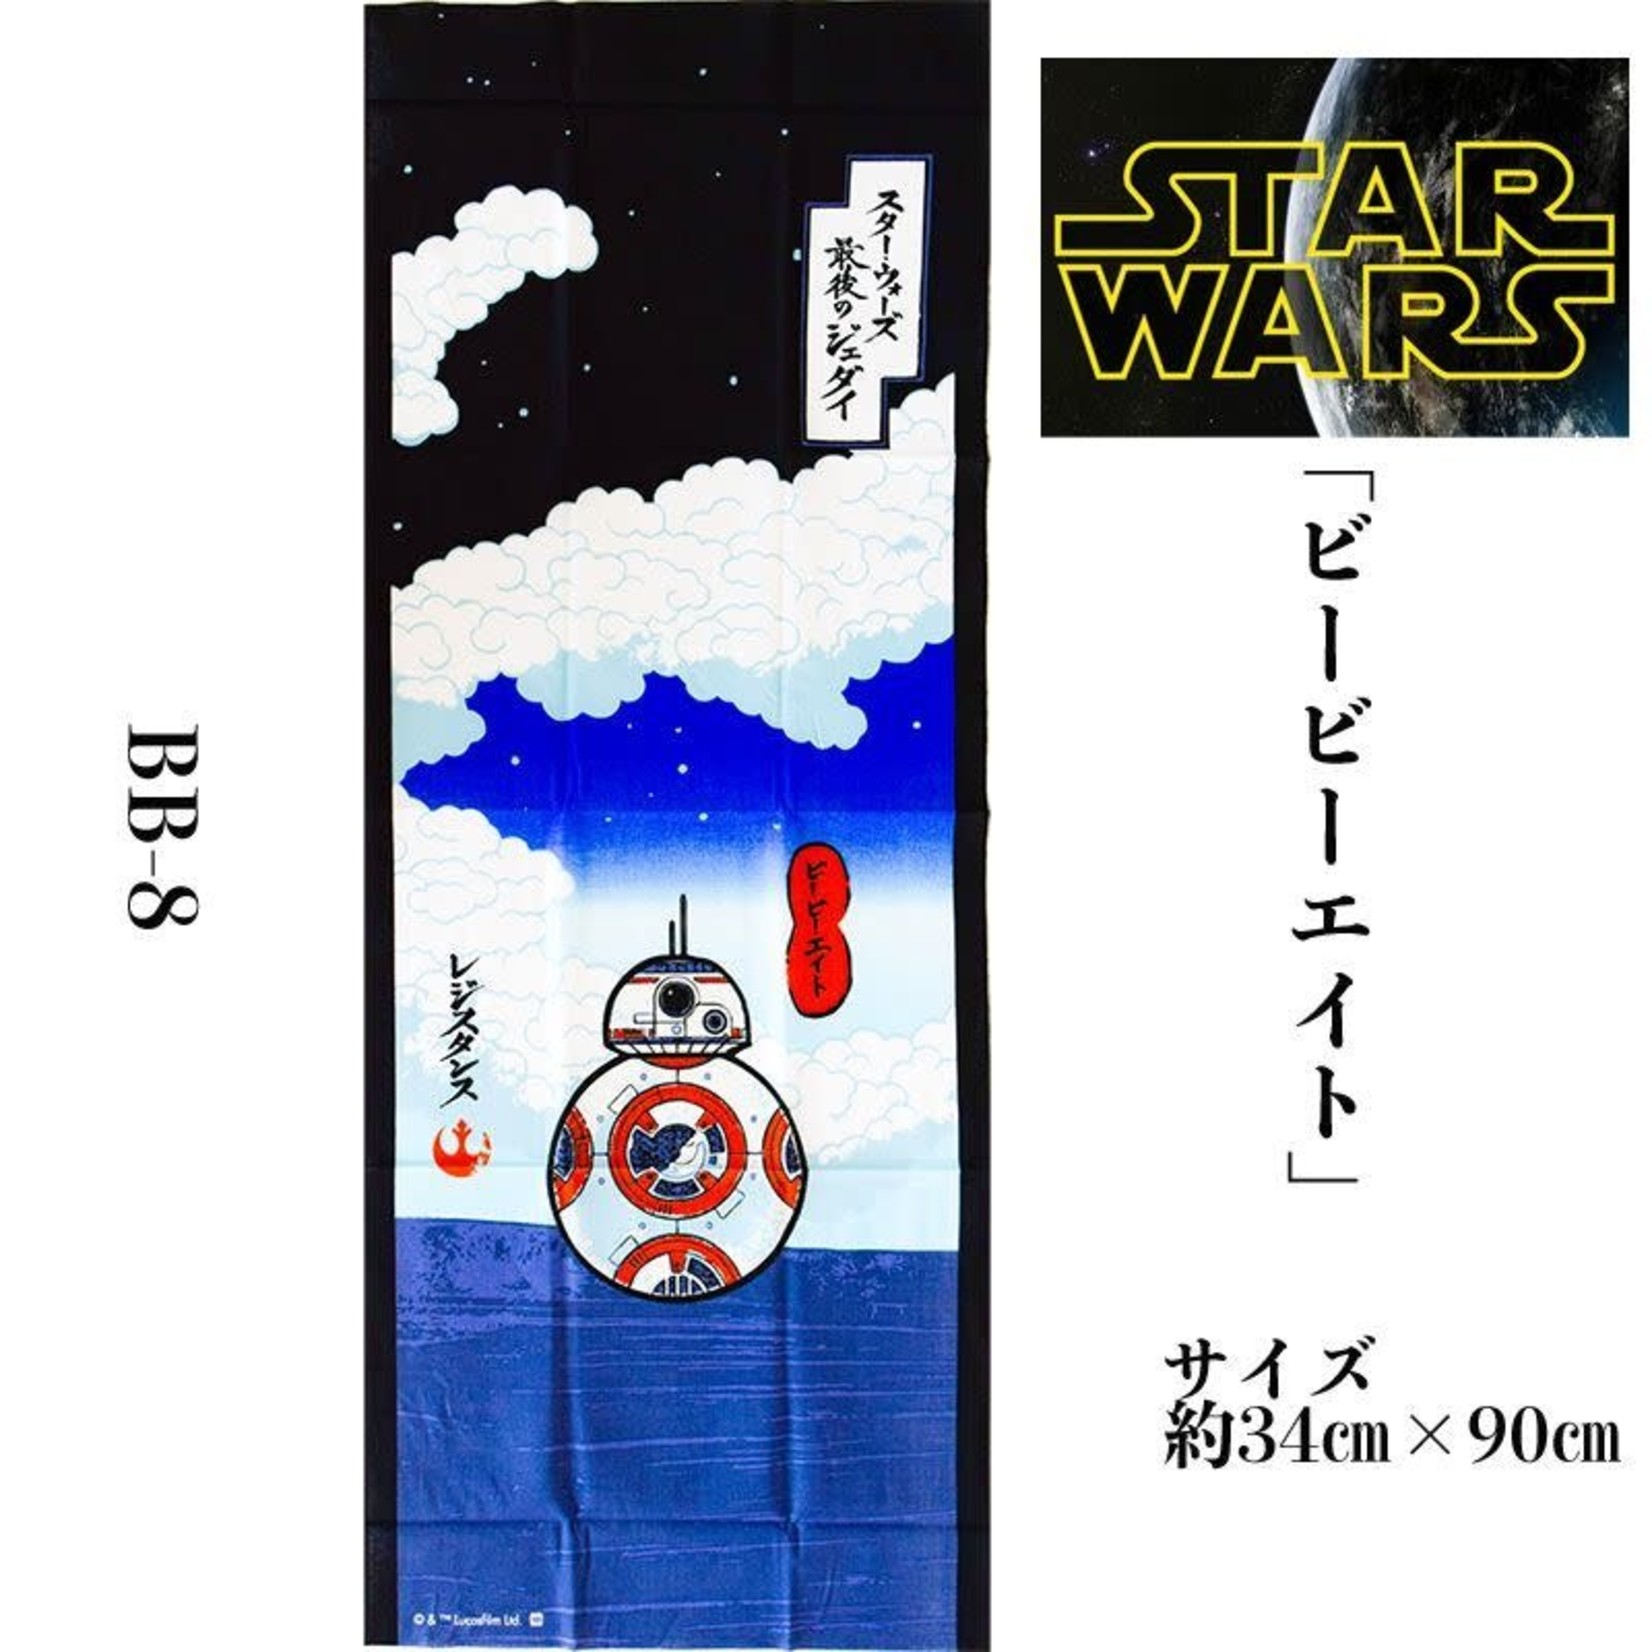 Star Wars - BB8 Tenugui